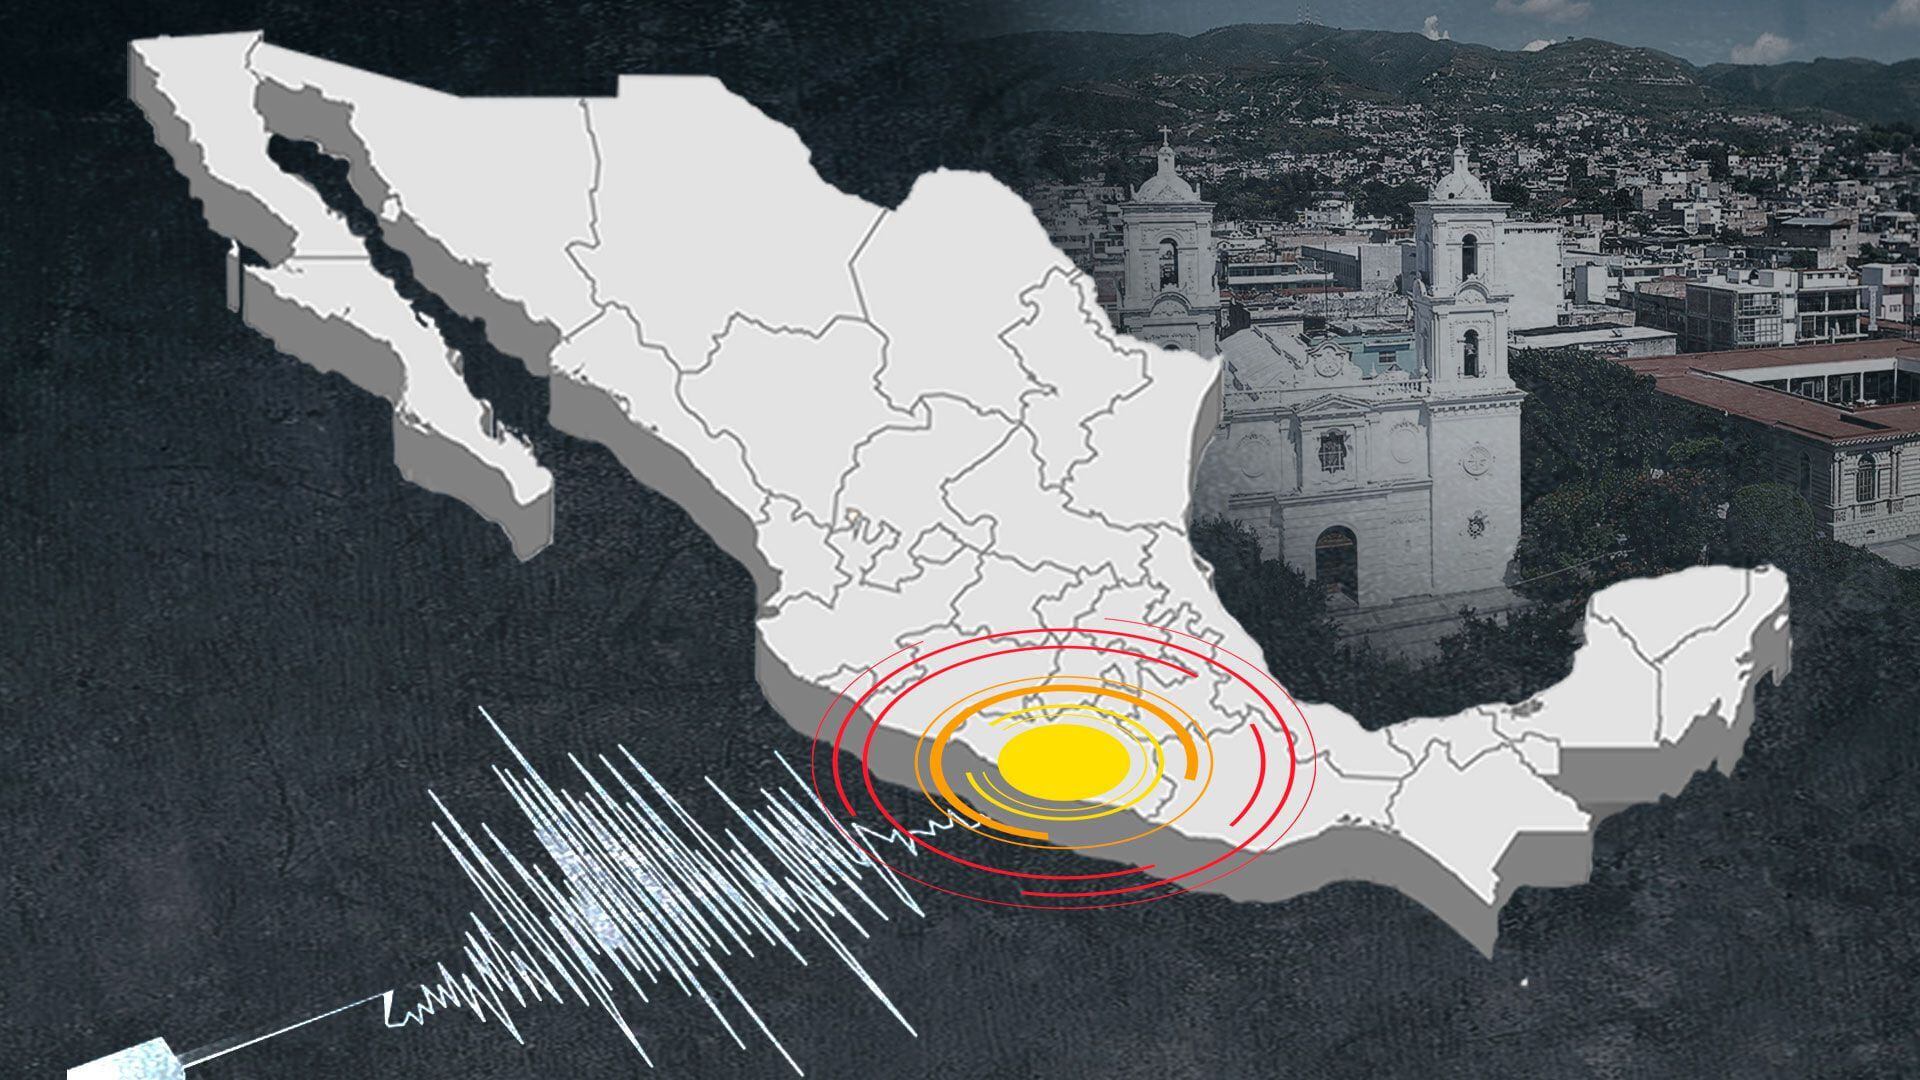 La información preliminar señala que el sismo tuvo epicentro en Ometepec. (Infobae)